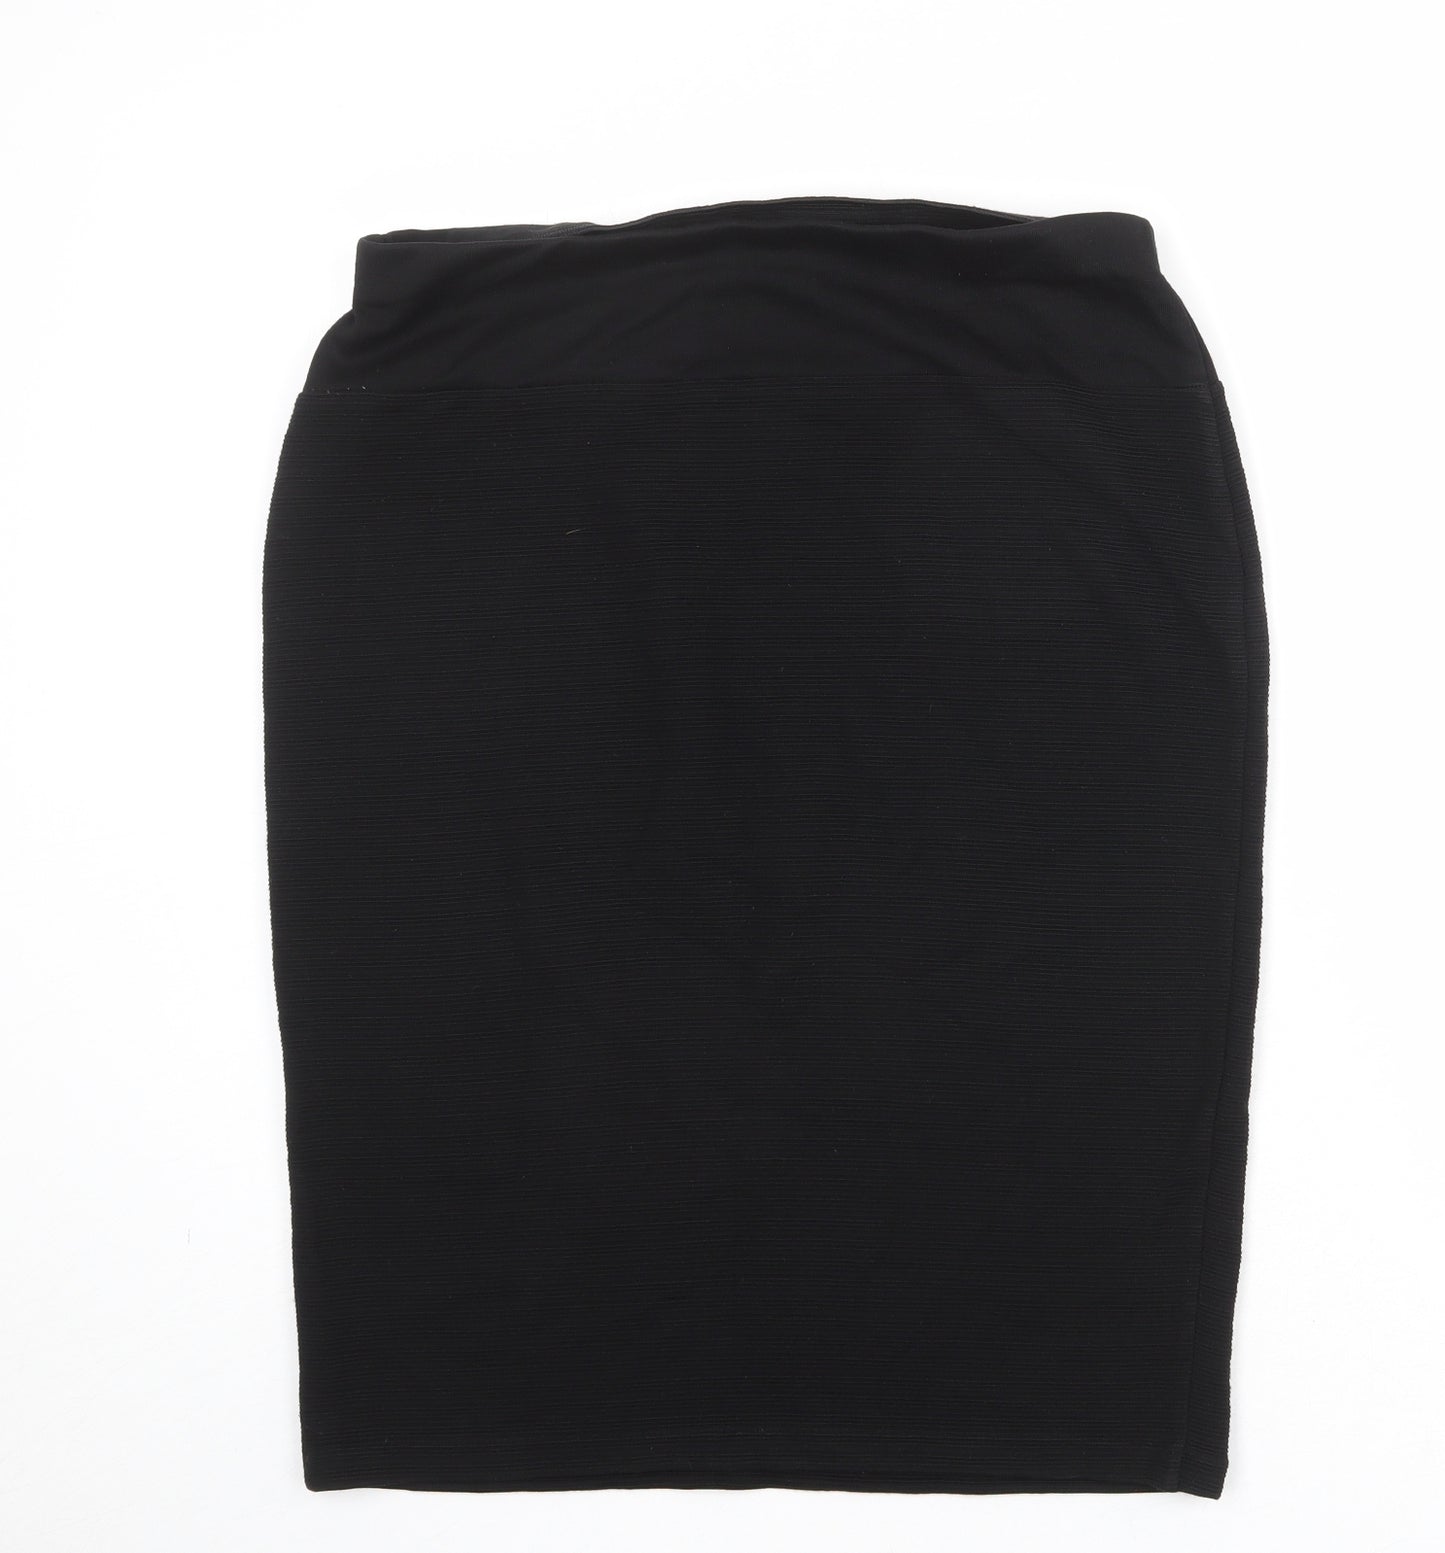 Marks and Spencer Womens Black Acrylic Bandage Skirt Size 16